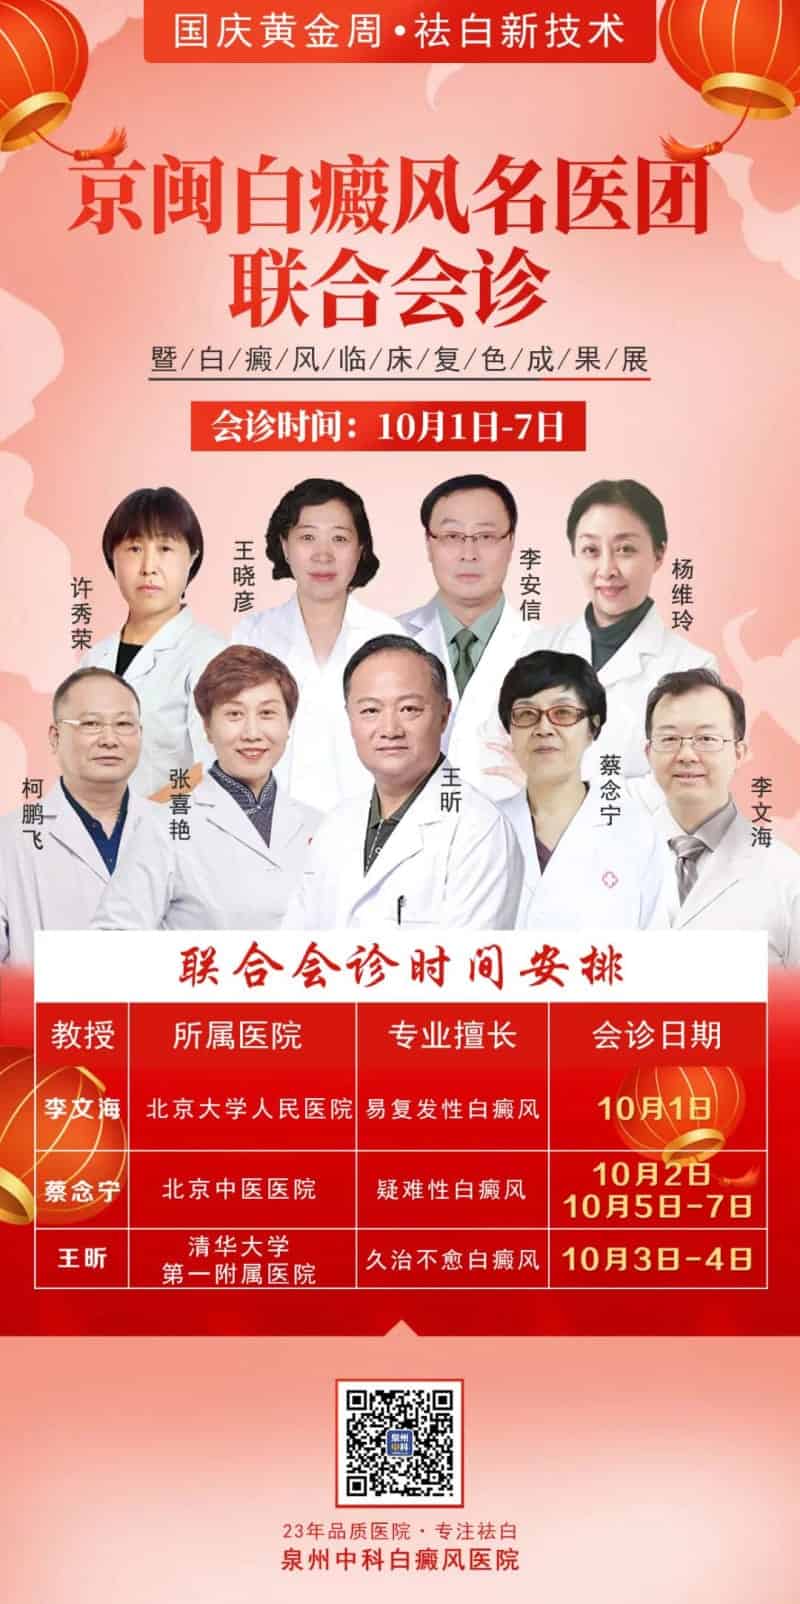 【明日会诊预告】10月5-7日，北京中医医院『蔡念宁教授』“压轴”助力假期最后一次会诊，你还要错过吗？